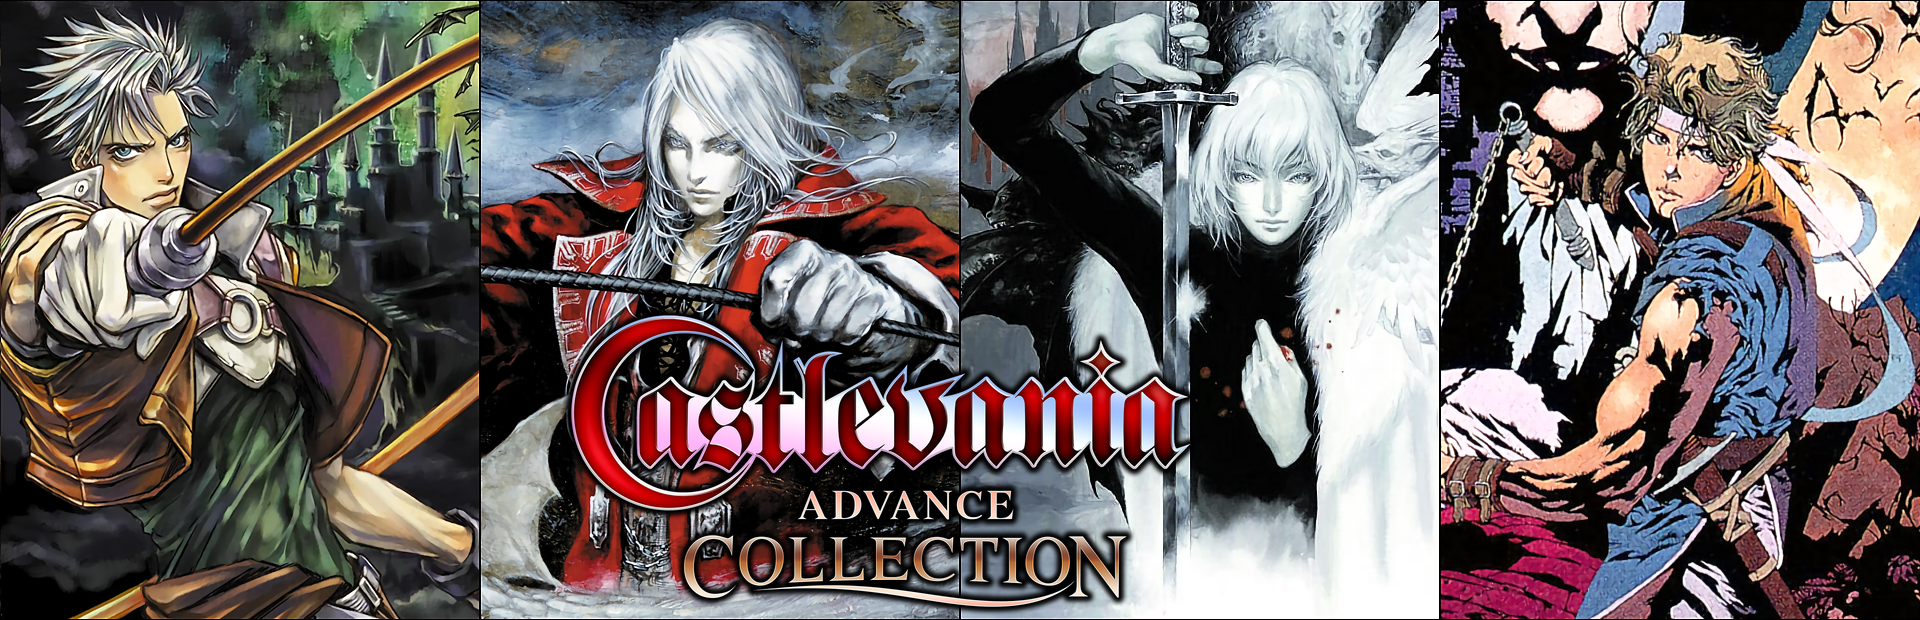 دانلود بازی Castlevania Advanced Collection برای PC | گیمباتو